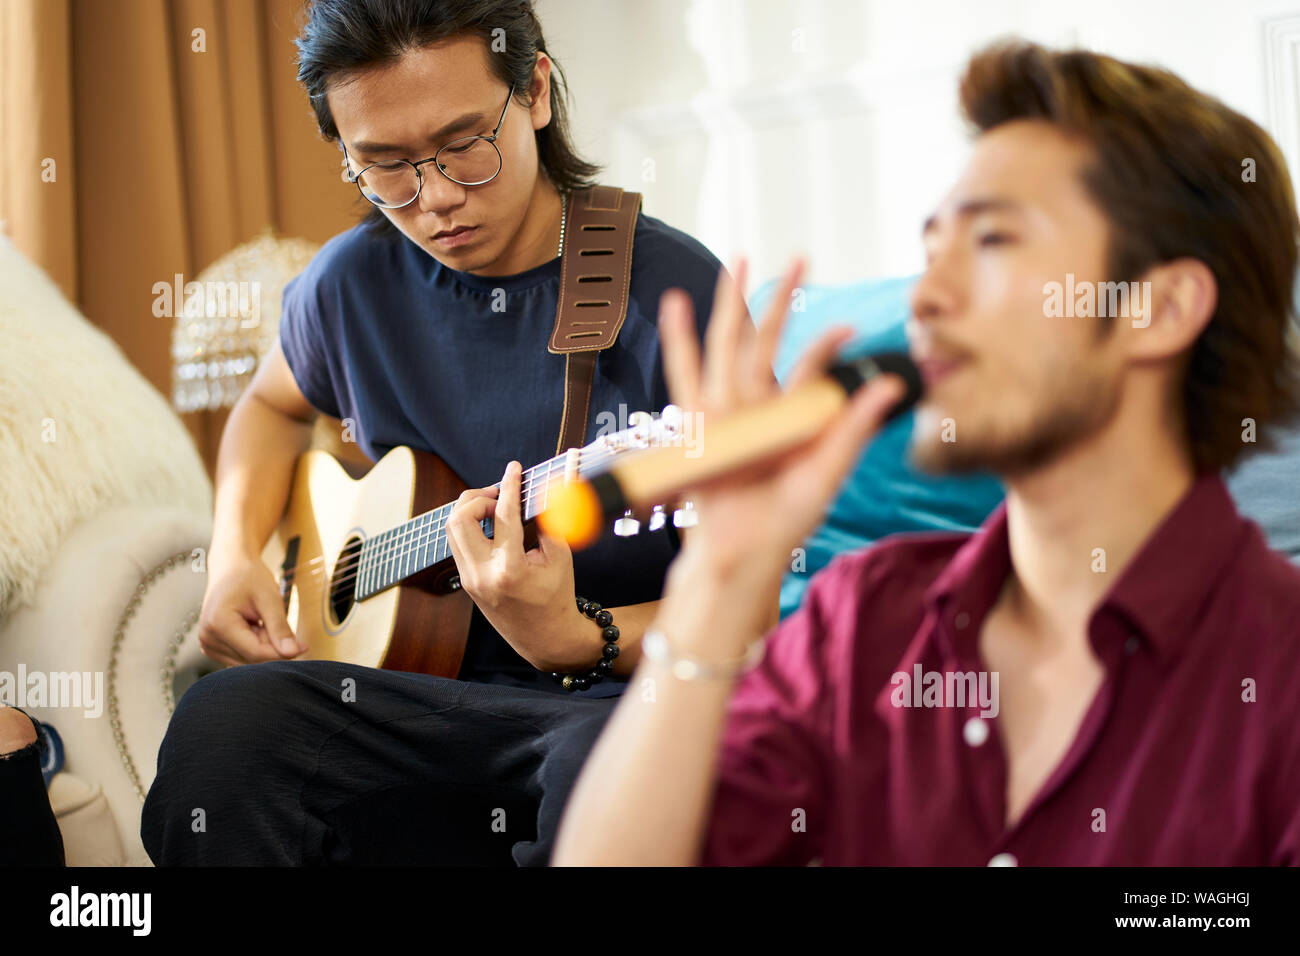 Giovani asiatici uomini adulti rock band membri ripassando cantare suonare strumenti musicali nel salotto di una casa Foto Stock